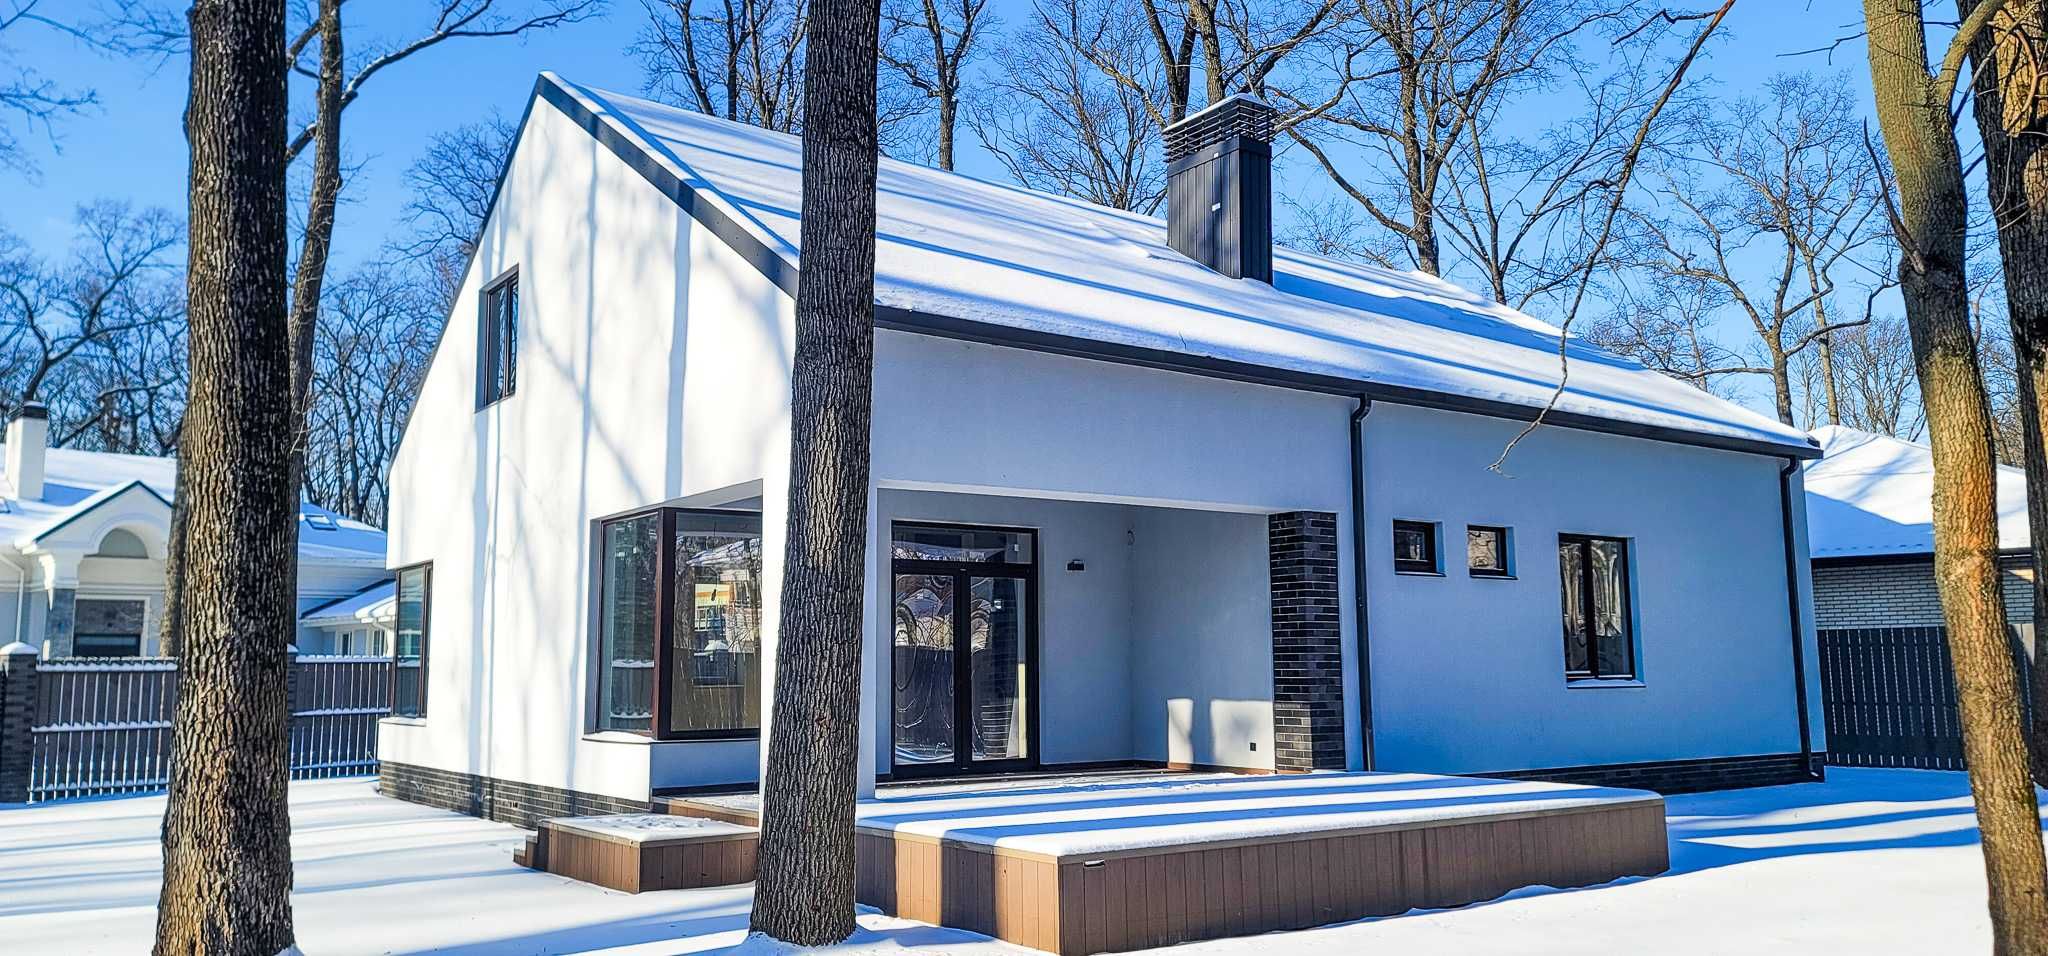 Офис продаж в посёлке "Форест" предлагает дом в скандинавском стиле